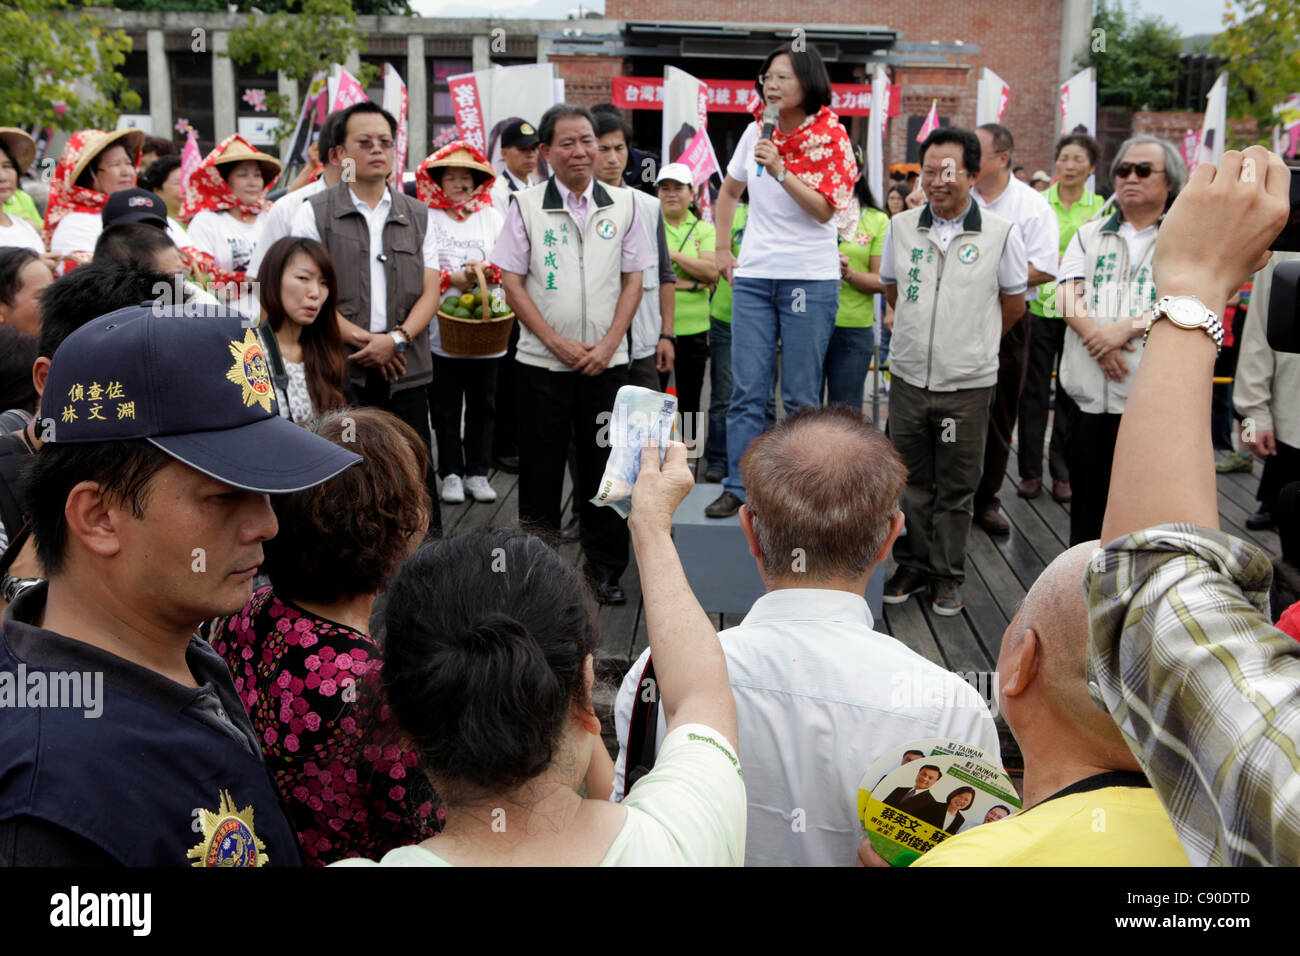 Un partidario quiere donar dinero para Tsai Ing-wen (oriente), el candidato presidencial del DPP, mientras Tsai hablando con simpatizantes durante un mitin de campaña, en Taichung, Taiwán, el lunes, 07 de noviembre de 2011. Taiwán tendrá elecciones presidenciales y legislativas el 14 de enero de 2012. Foto de stock